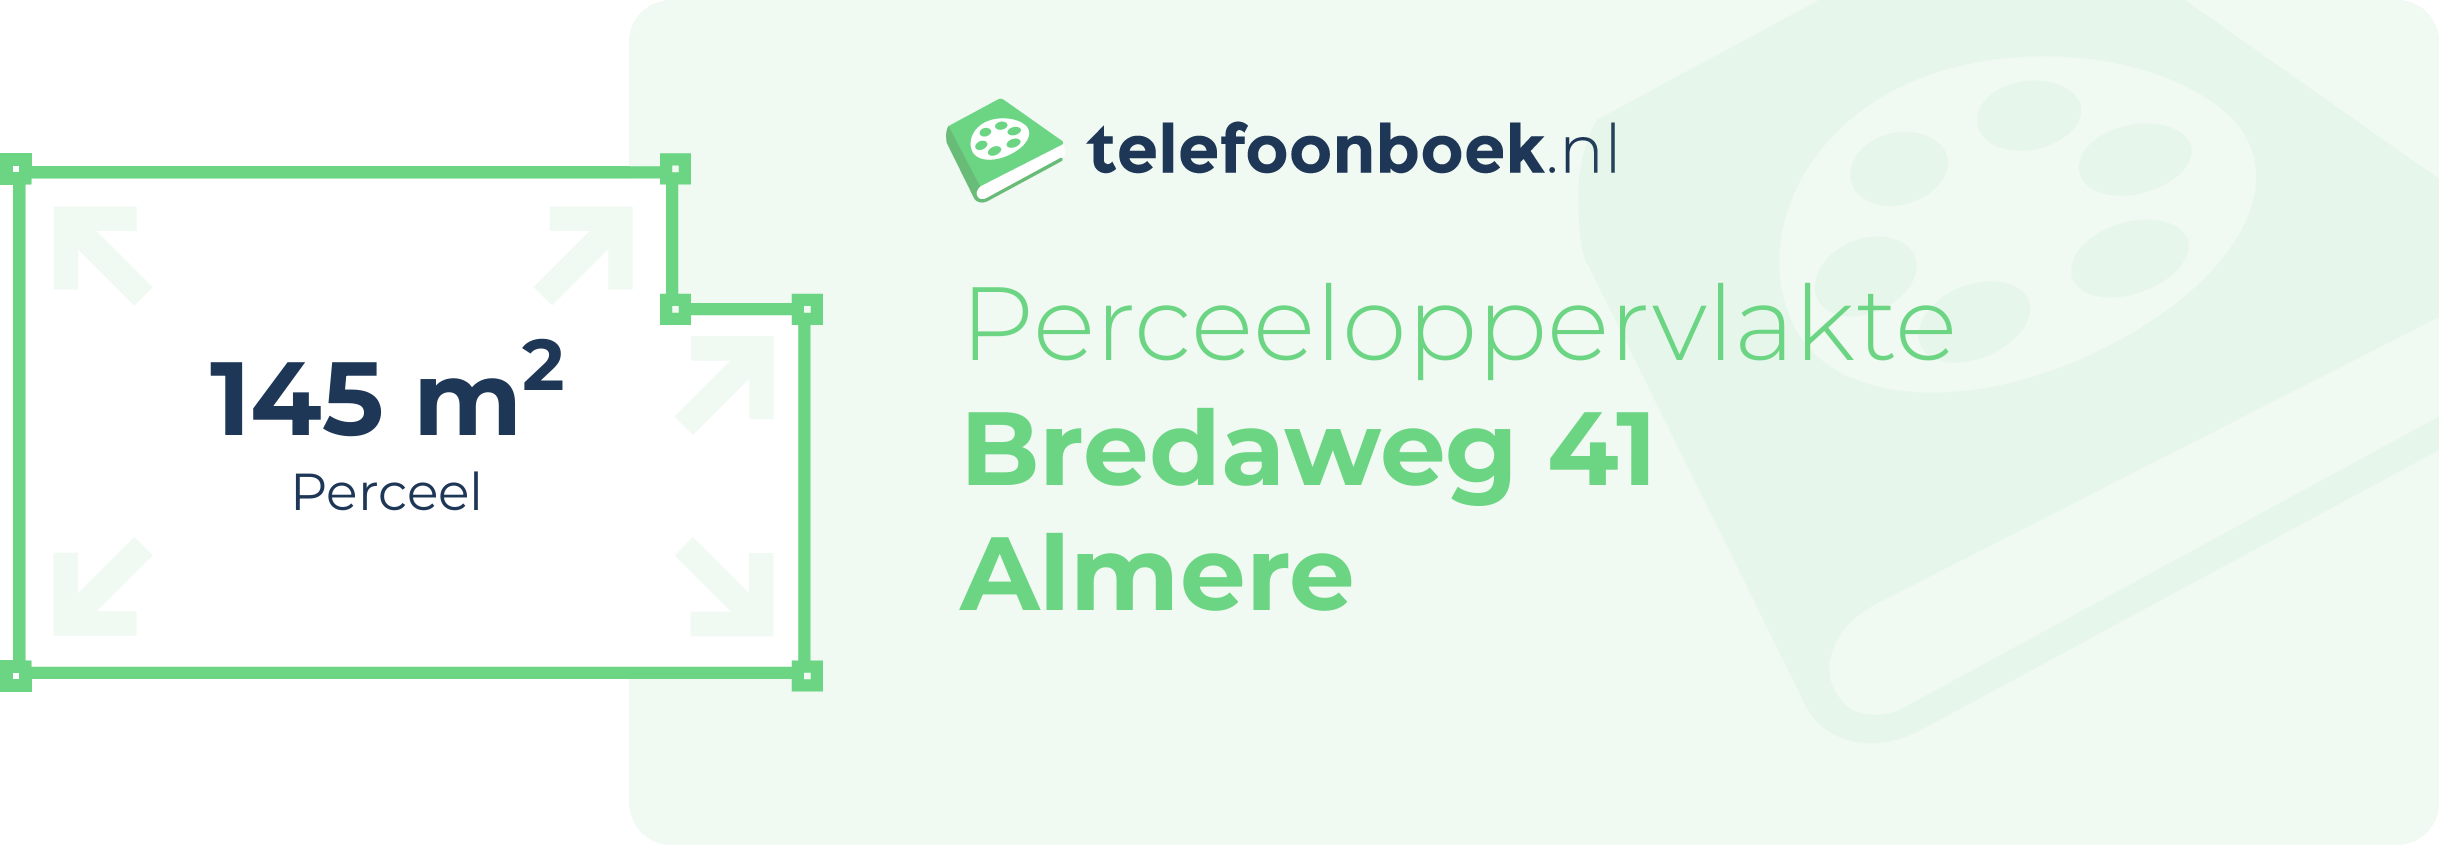 Perceeloppervlakte Bredaweg 41 Almere